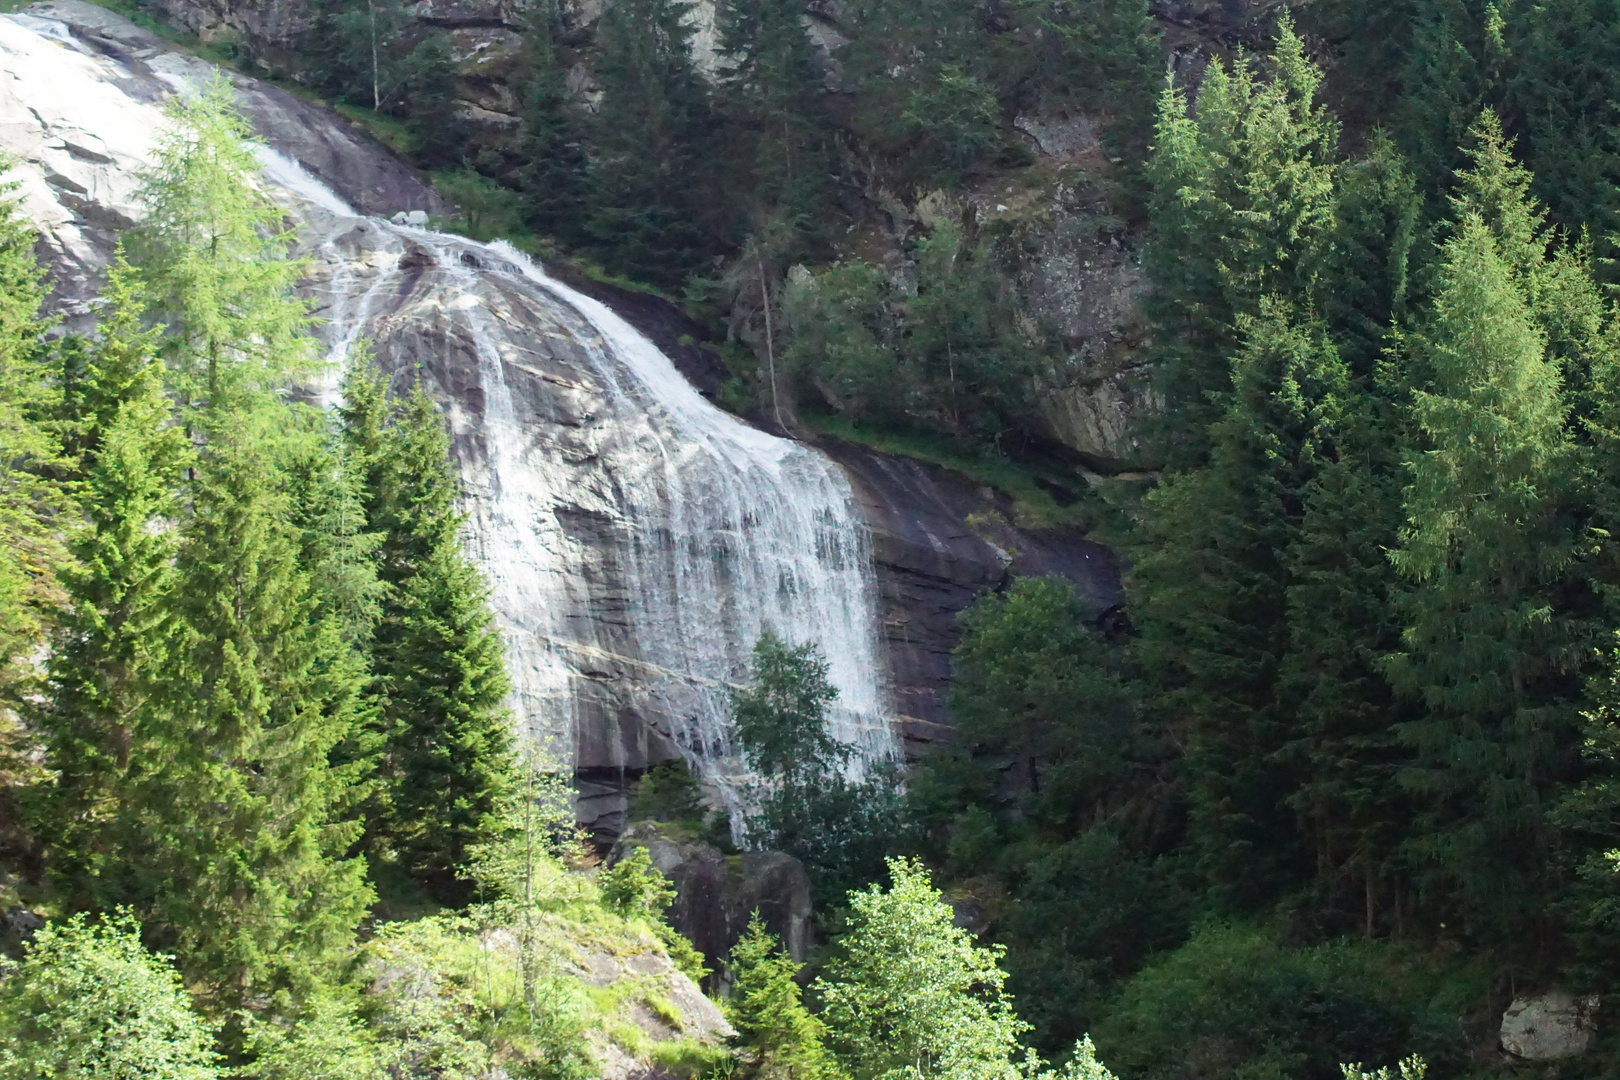 Wasserfall in Östereich